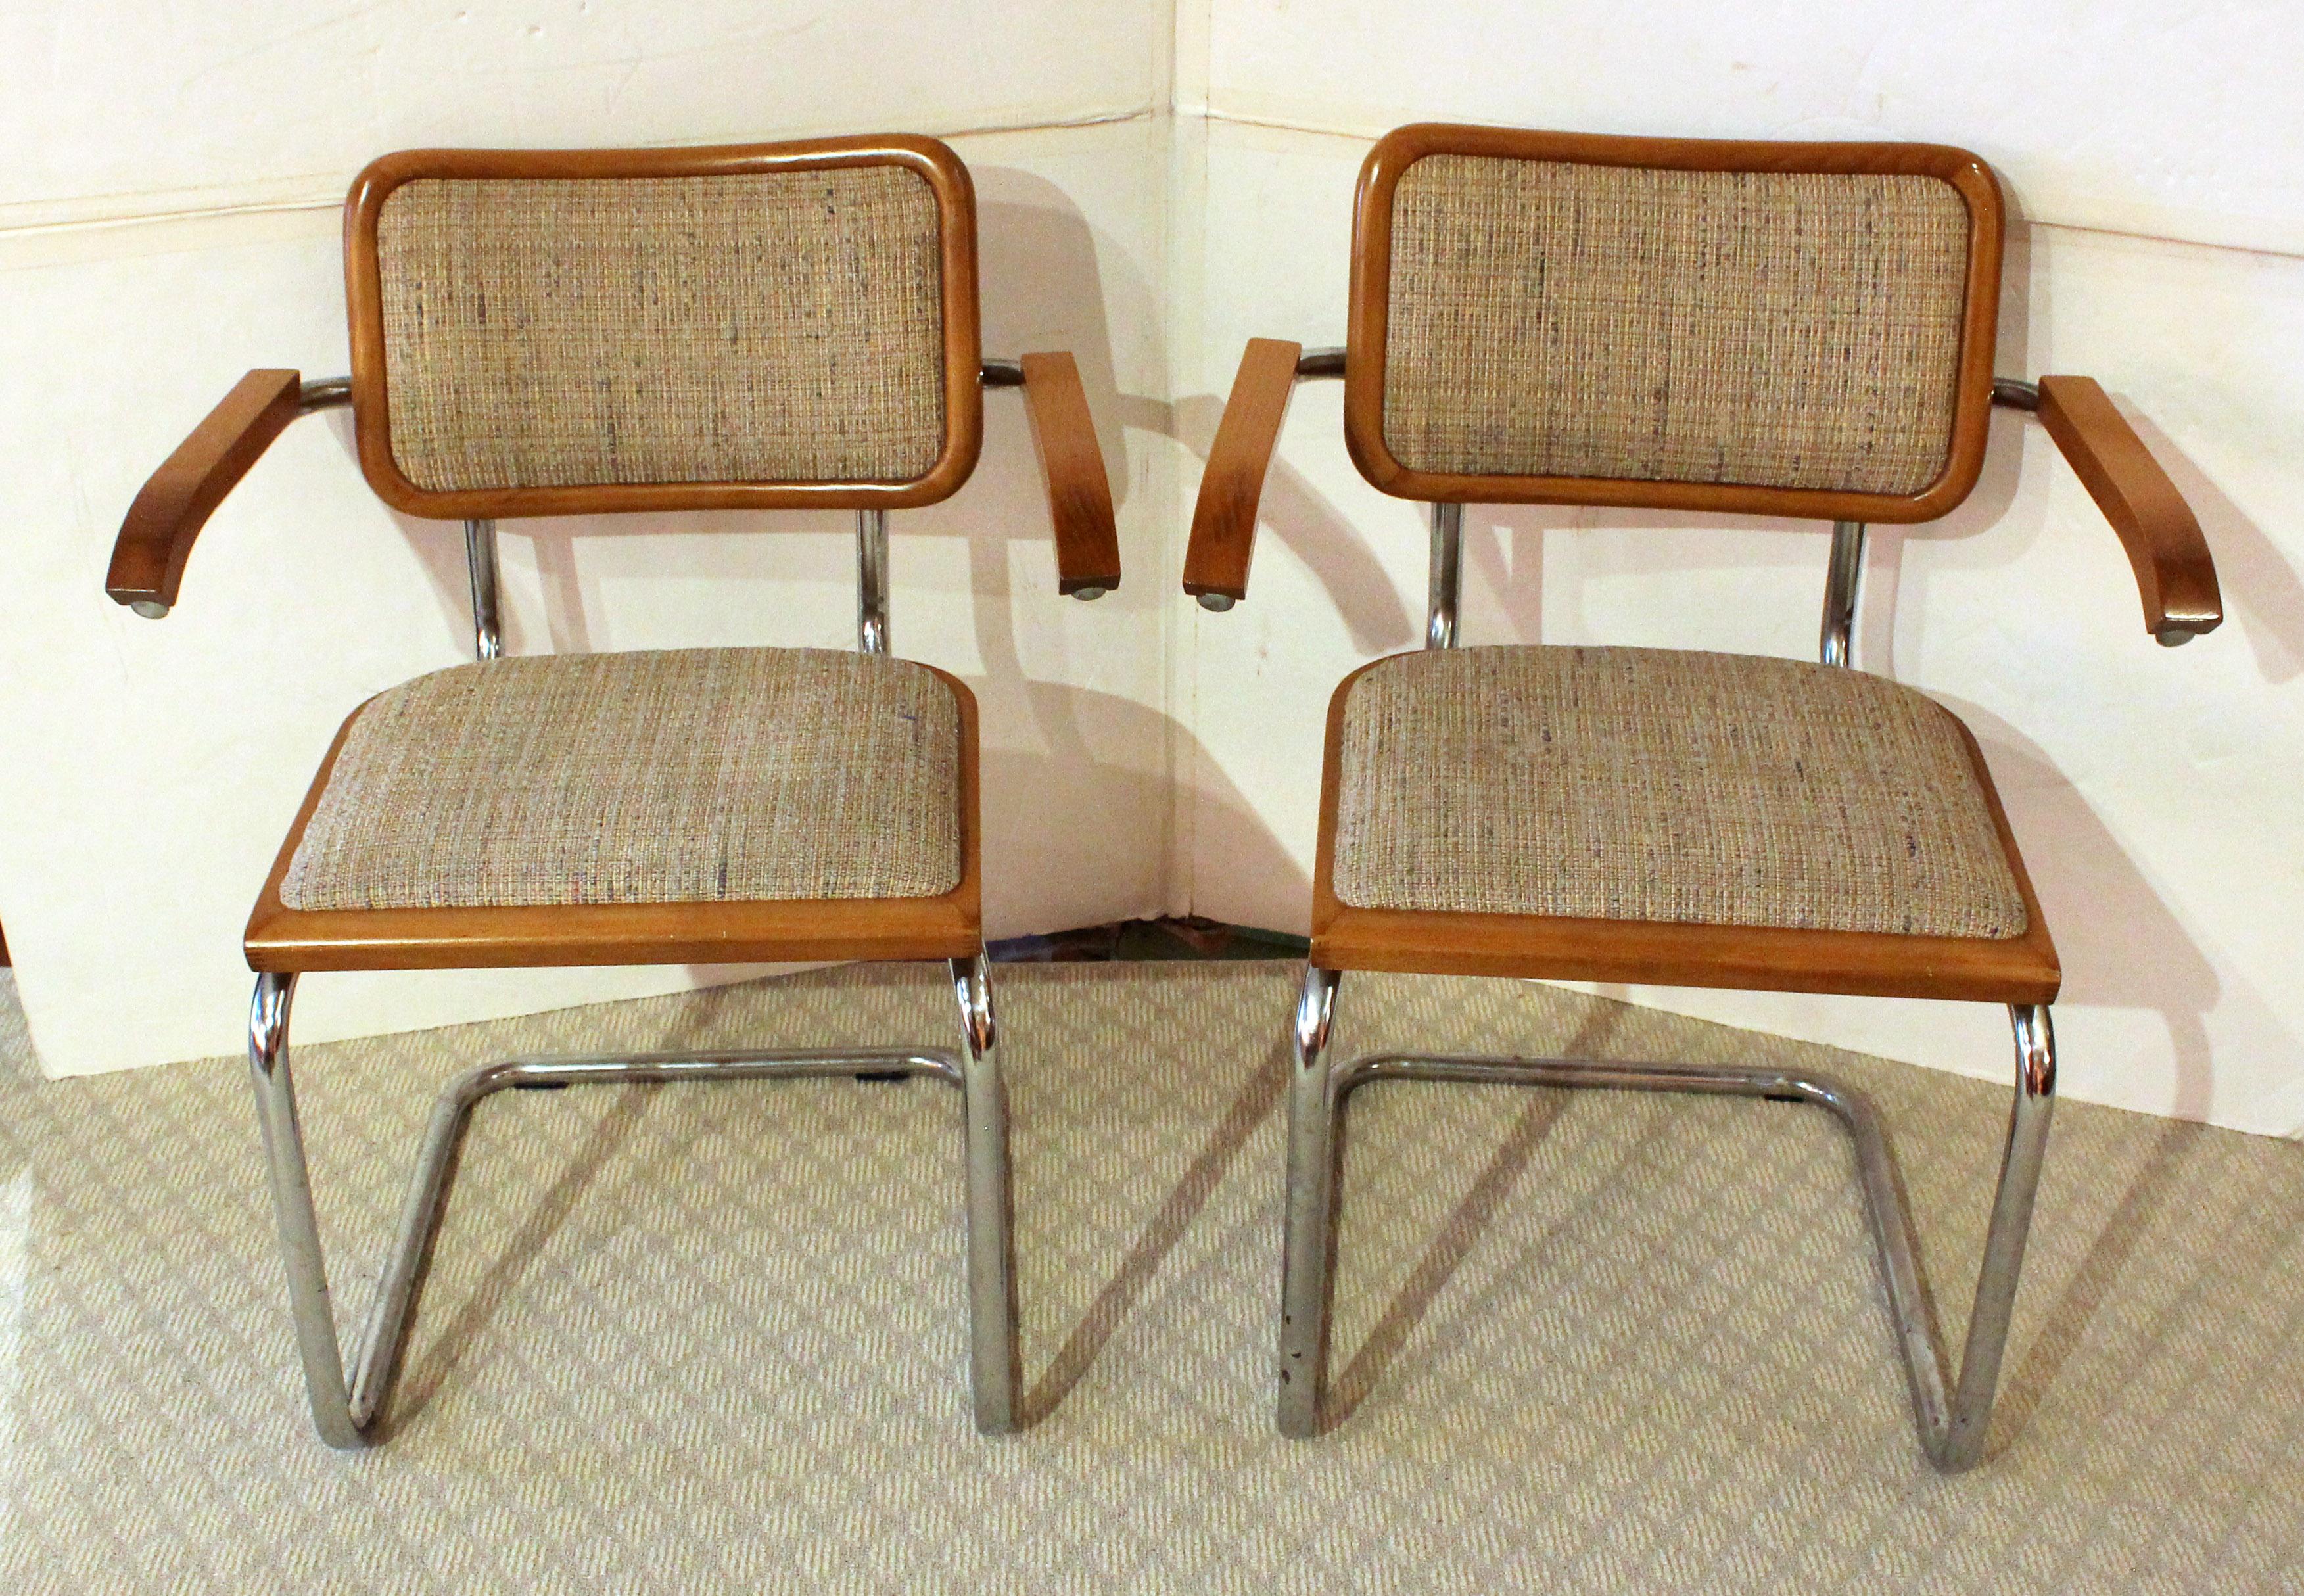 Paire de chaises à bras Cesca de Marcel Breuer, milieu des années 1970, italien. Ils n'ont eu qu'un seul propriétaire. Ils n'ont pas de pad et sont recouverts d'un tissu d'époque grossièrement tissé. Autocollant original 